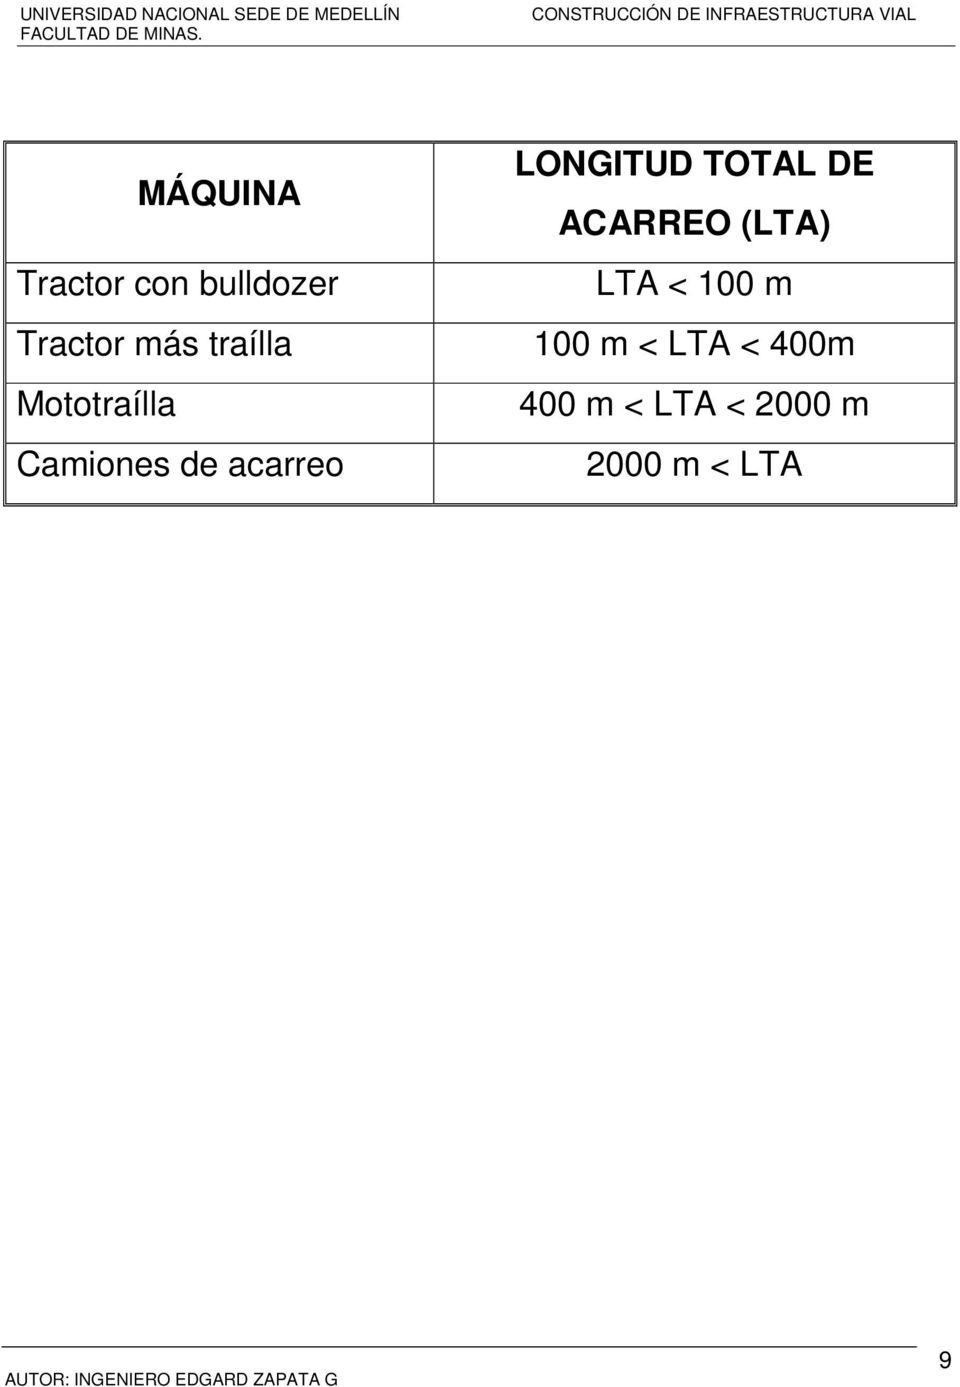 LONGITUD TOTAL DE ACARREO (LTA) LTA < 100 m